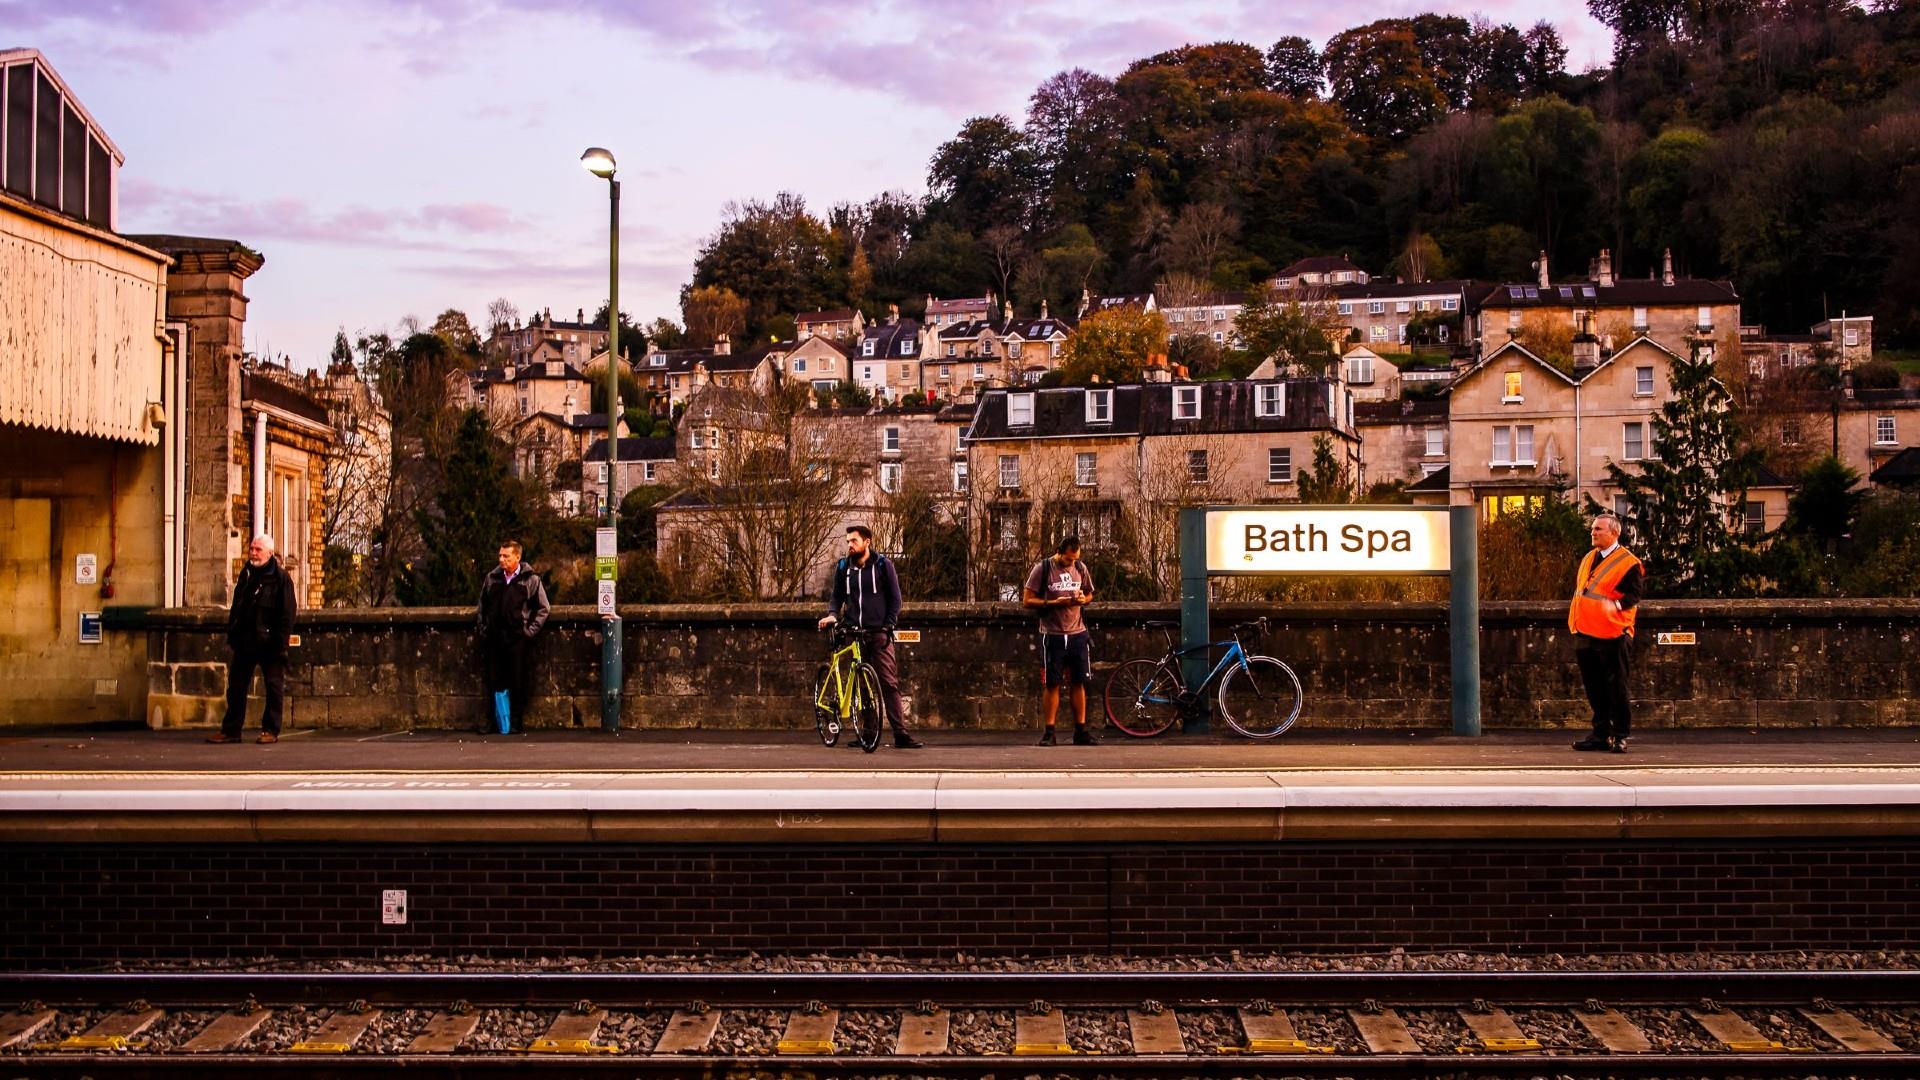 Platform at Bath Spa Train Station CREDIT Derek McCoy